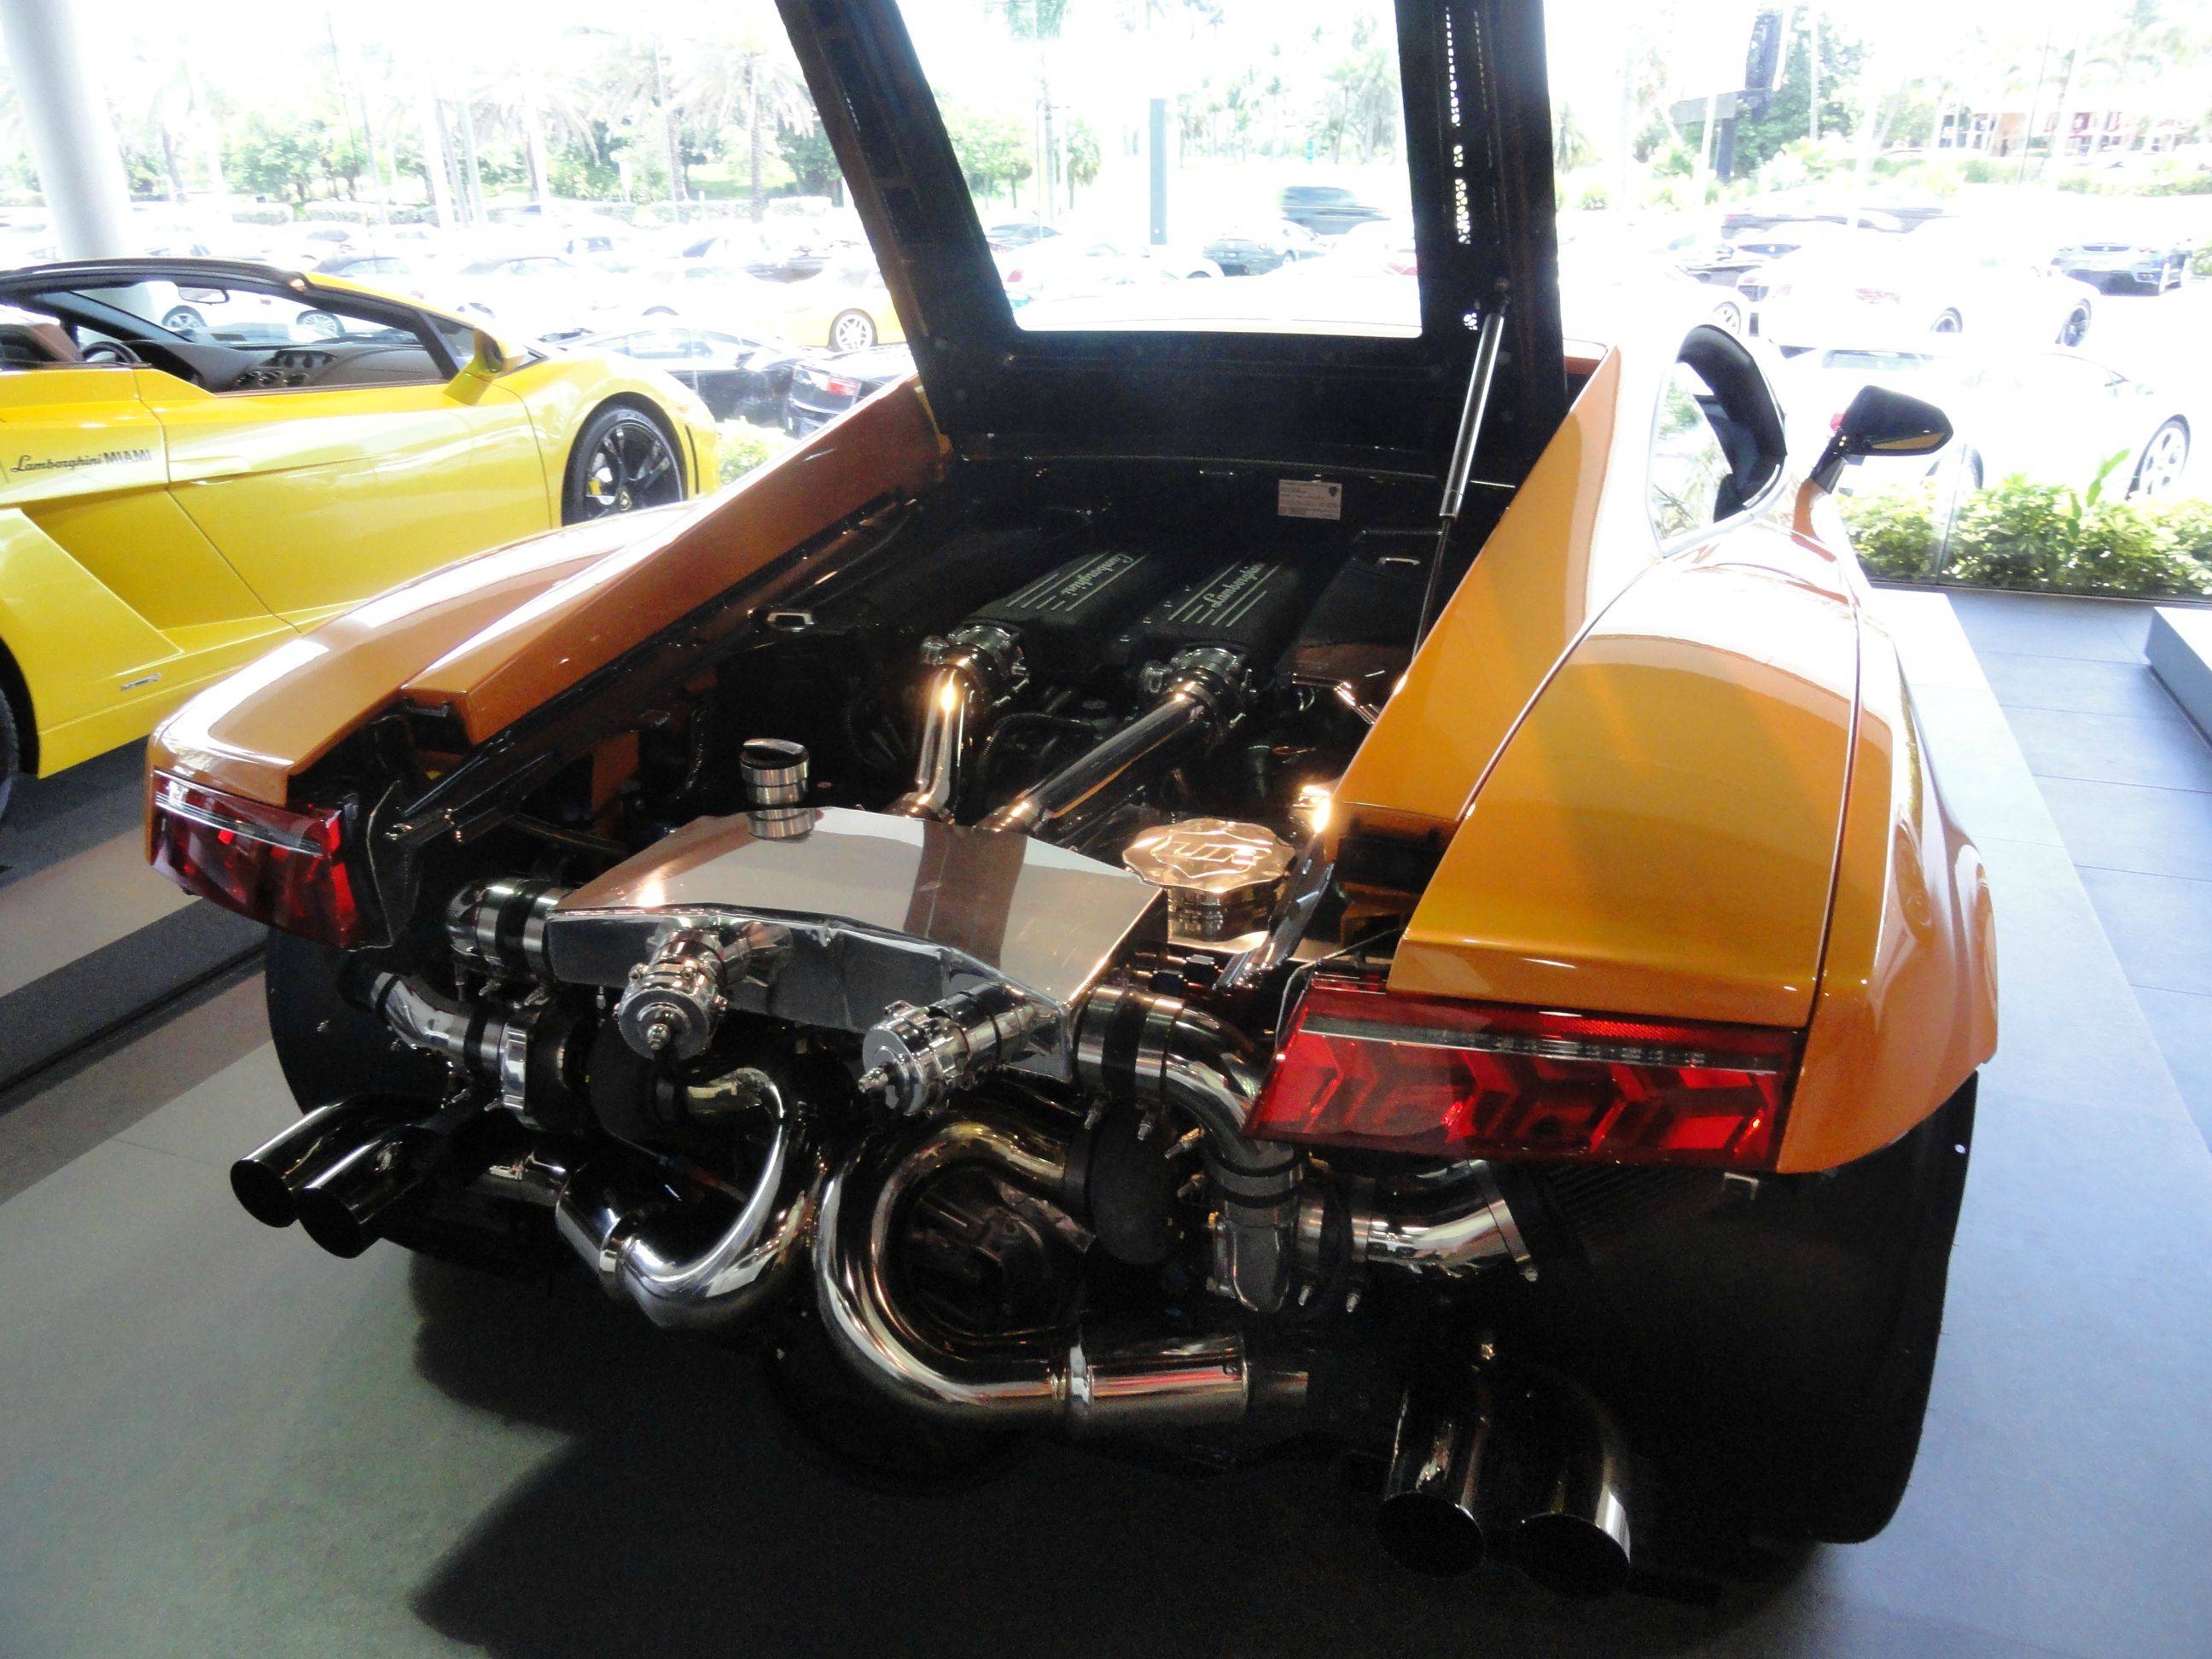 Business end of an Underground Racing twin turbo Lamborghini Gallardo.